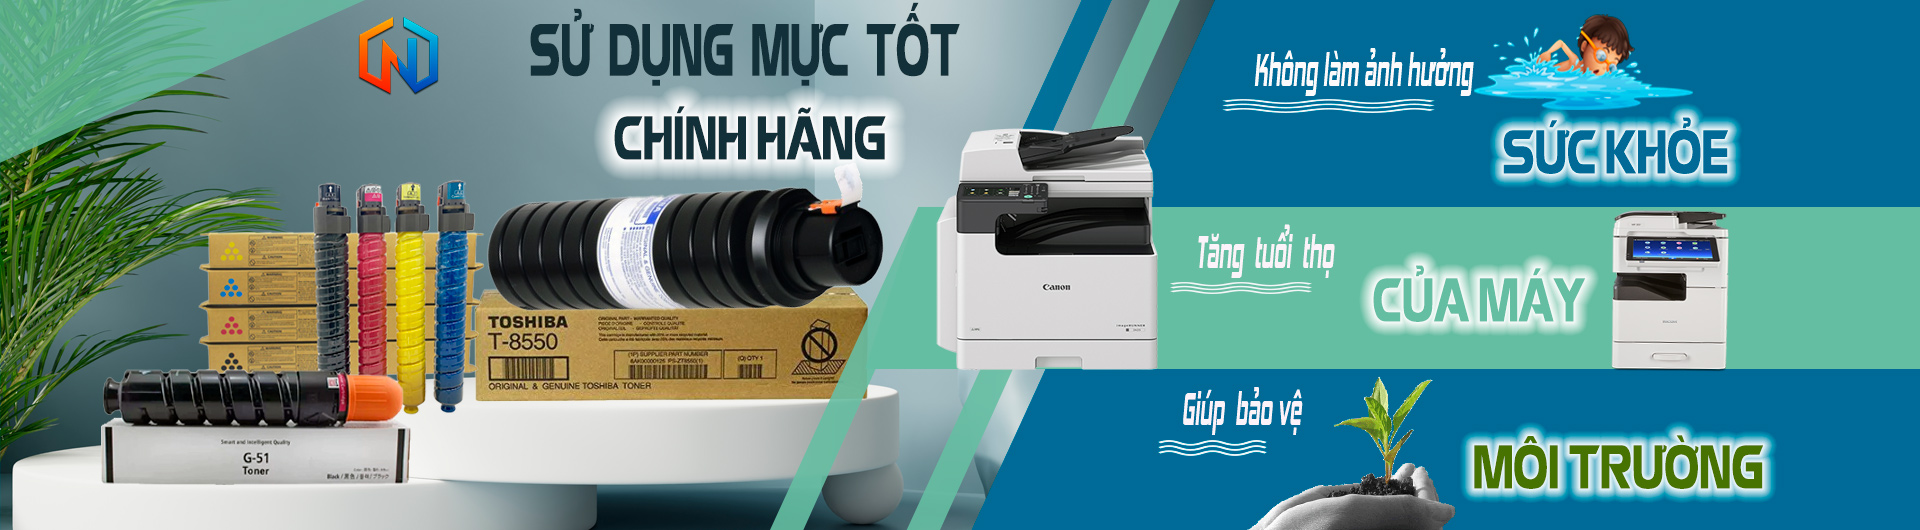 muc-may-photocopy-chinh-hang-ntt